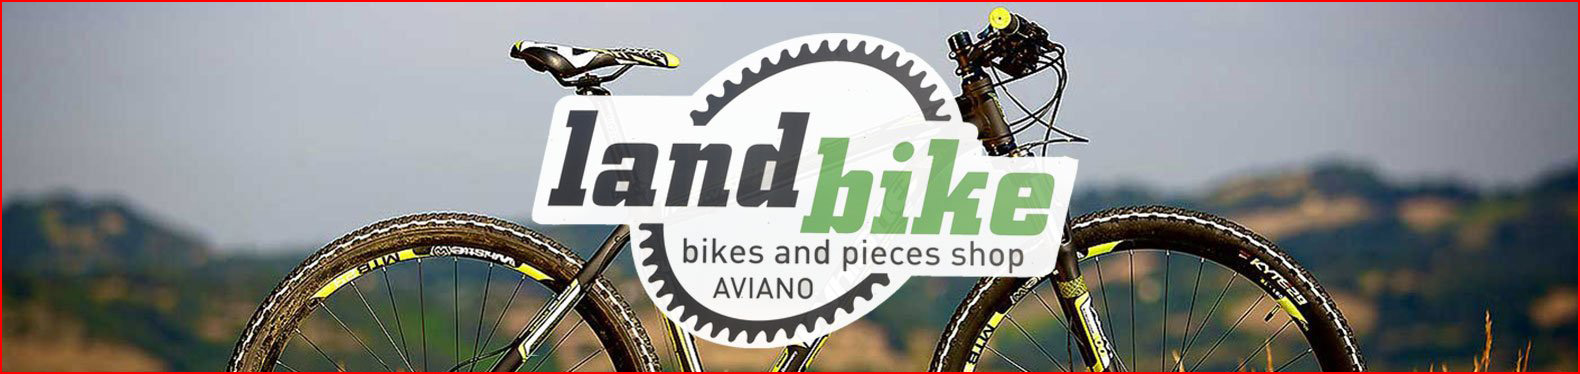 landbike bikes aviano